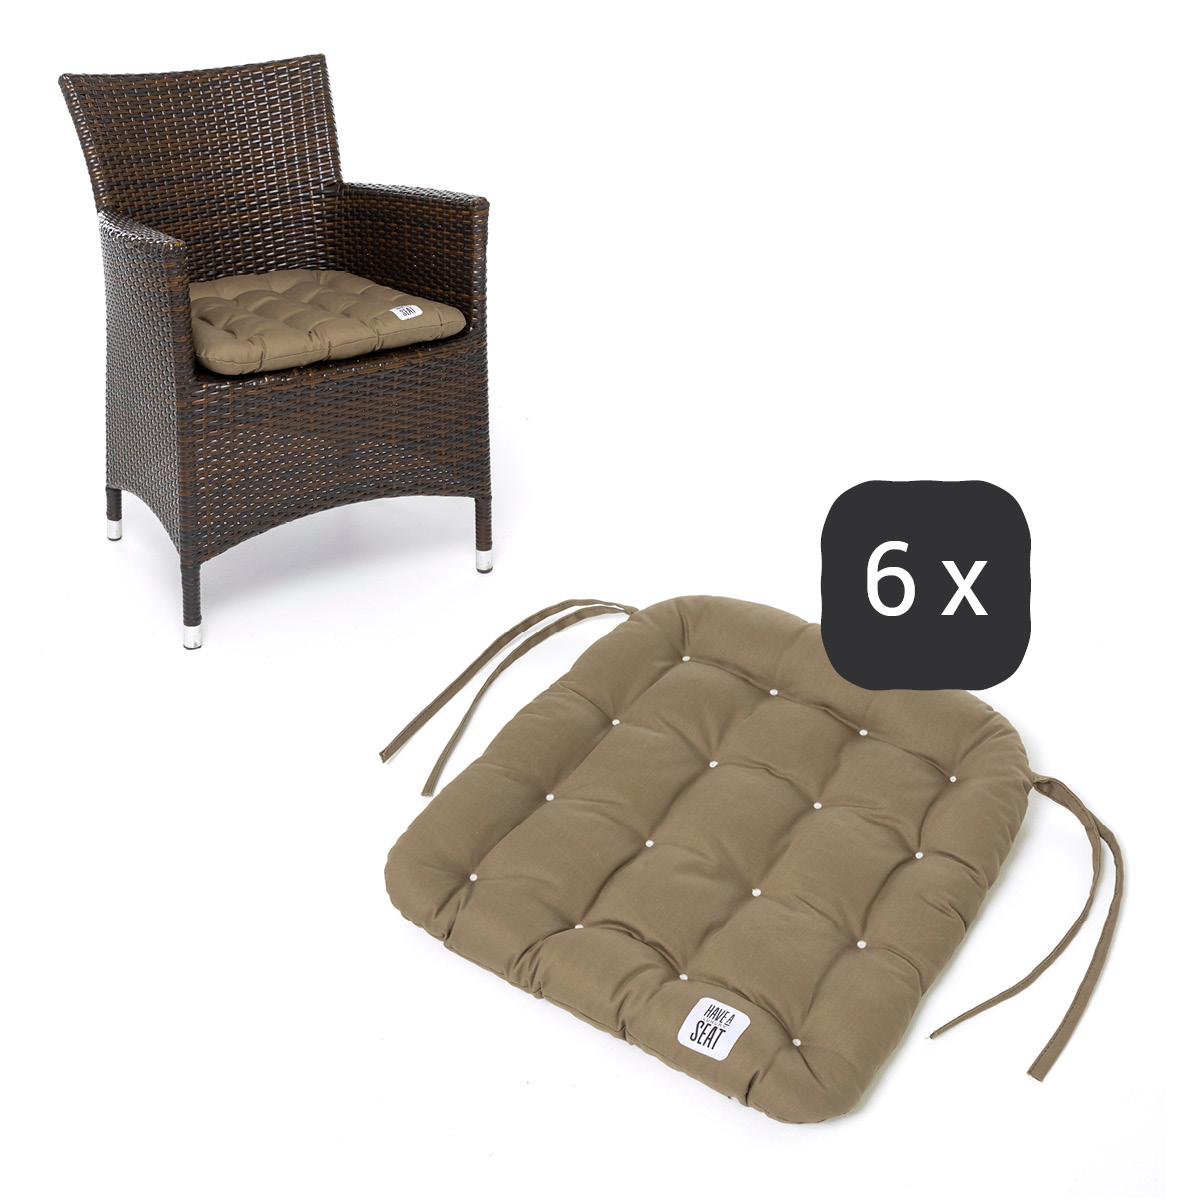 Sitzkissen für Rattanstühle 48x46 cm | Goldbraun | 6er Set | Premium-Sitzkomfort | Indoor / Outdoor | waschbar bis 95°C | HAVE A SEAT Living